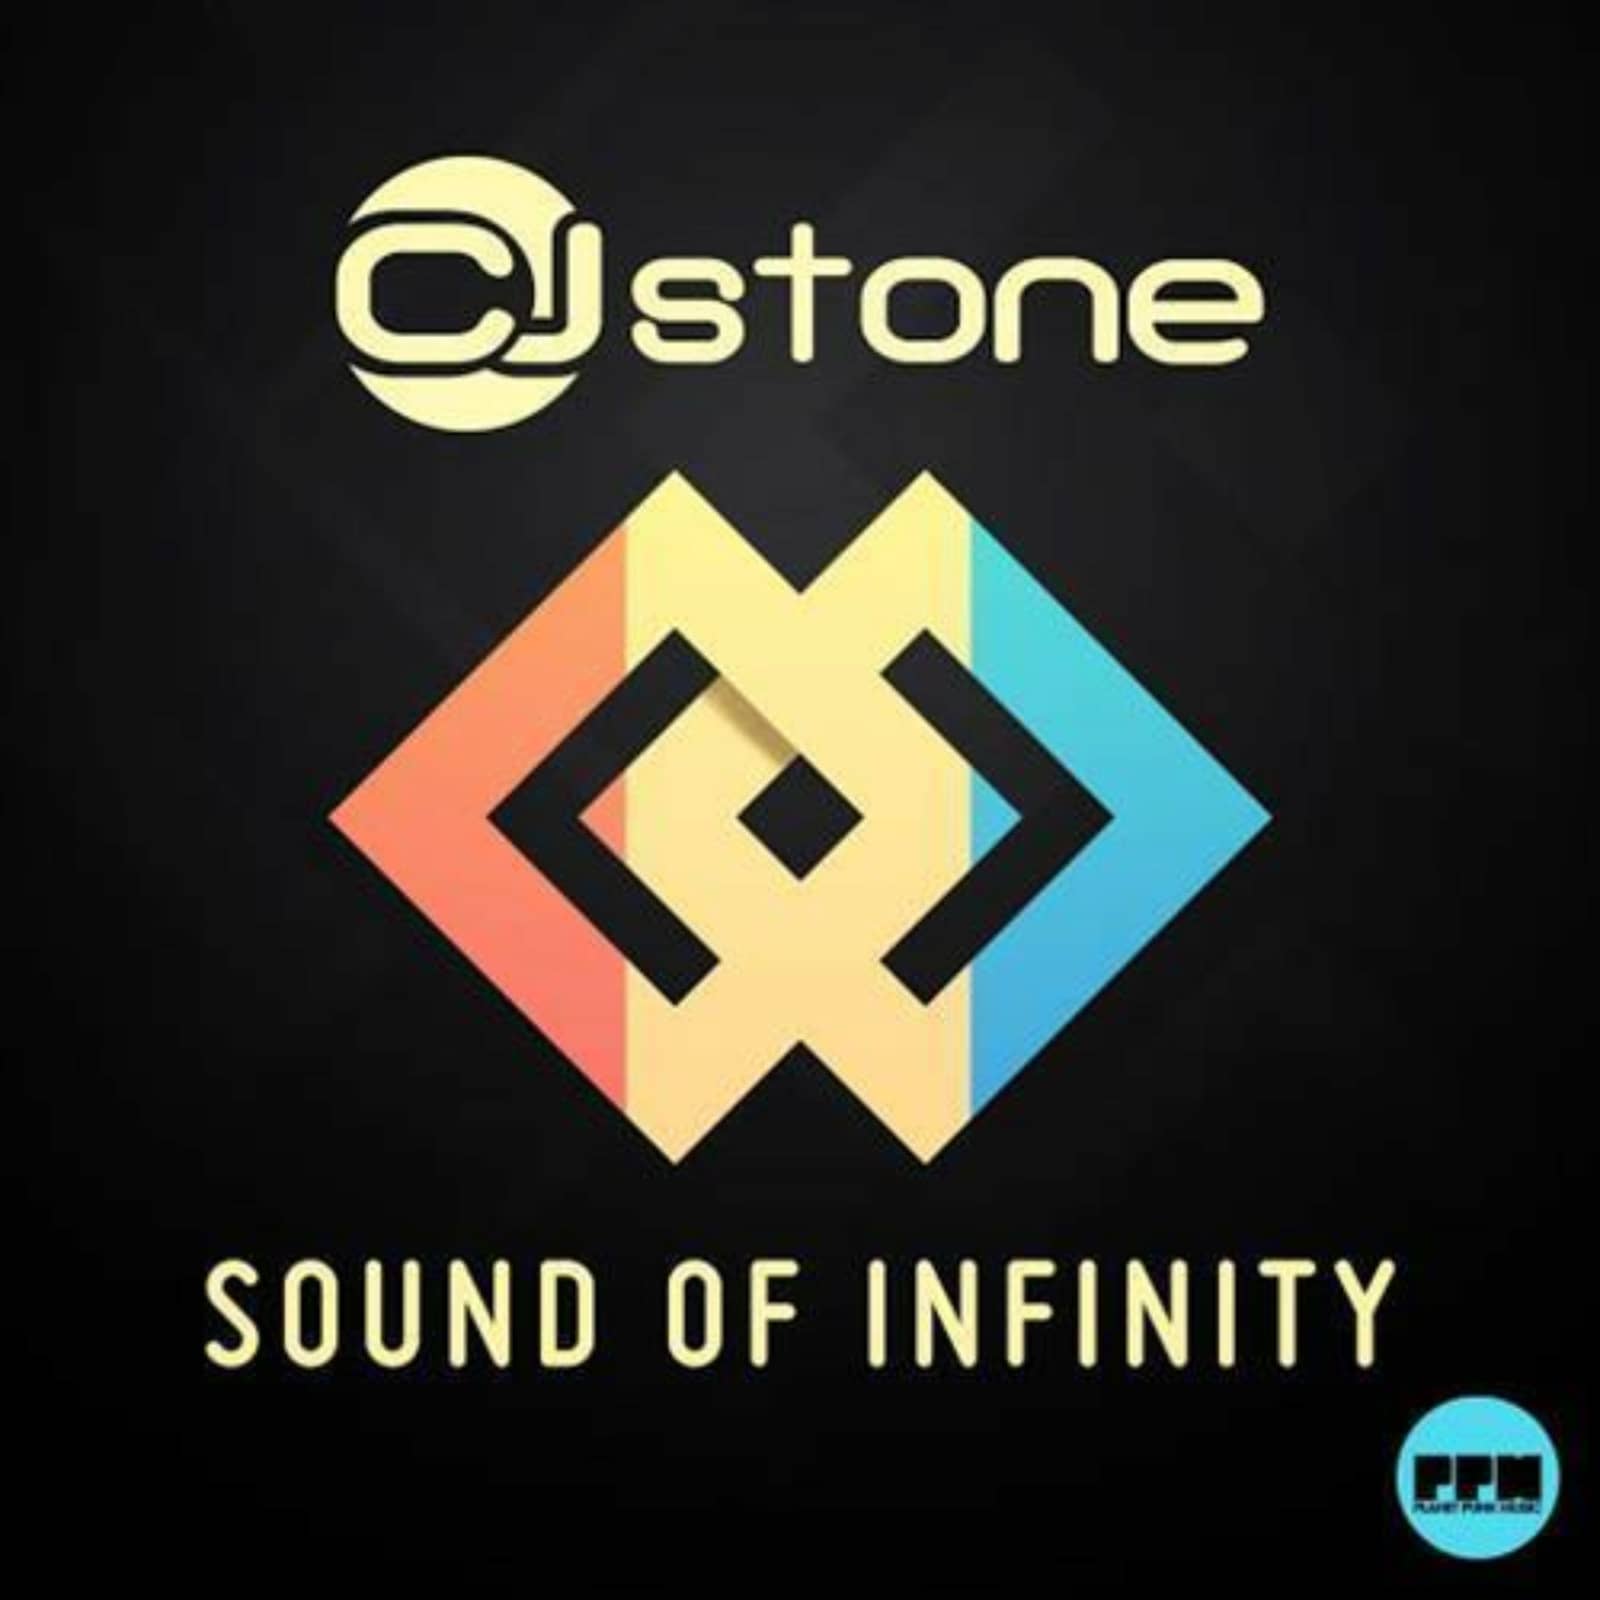 J stone. DJ CJ Stone. Infinity of Sound. CJ Stone Infinity лейбл. CJ Stone Infinity Shepilov Remix.